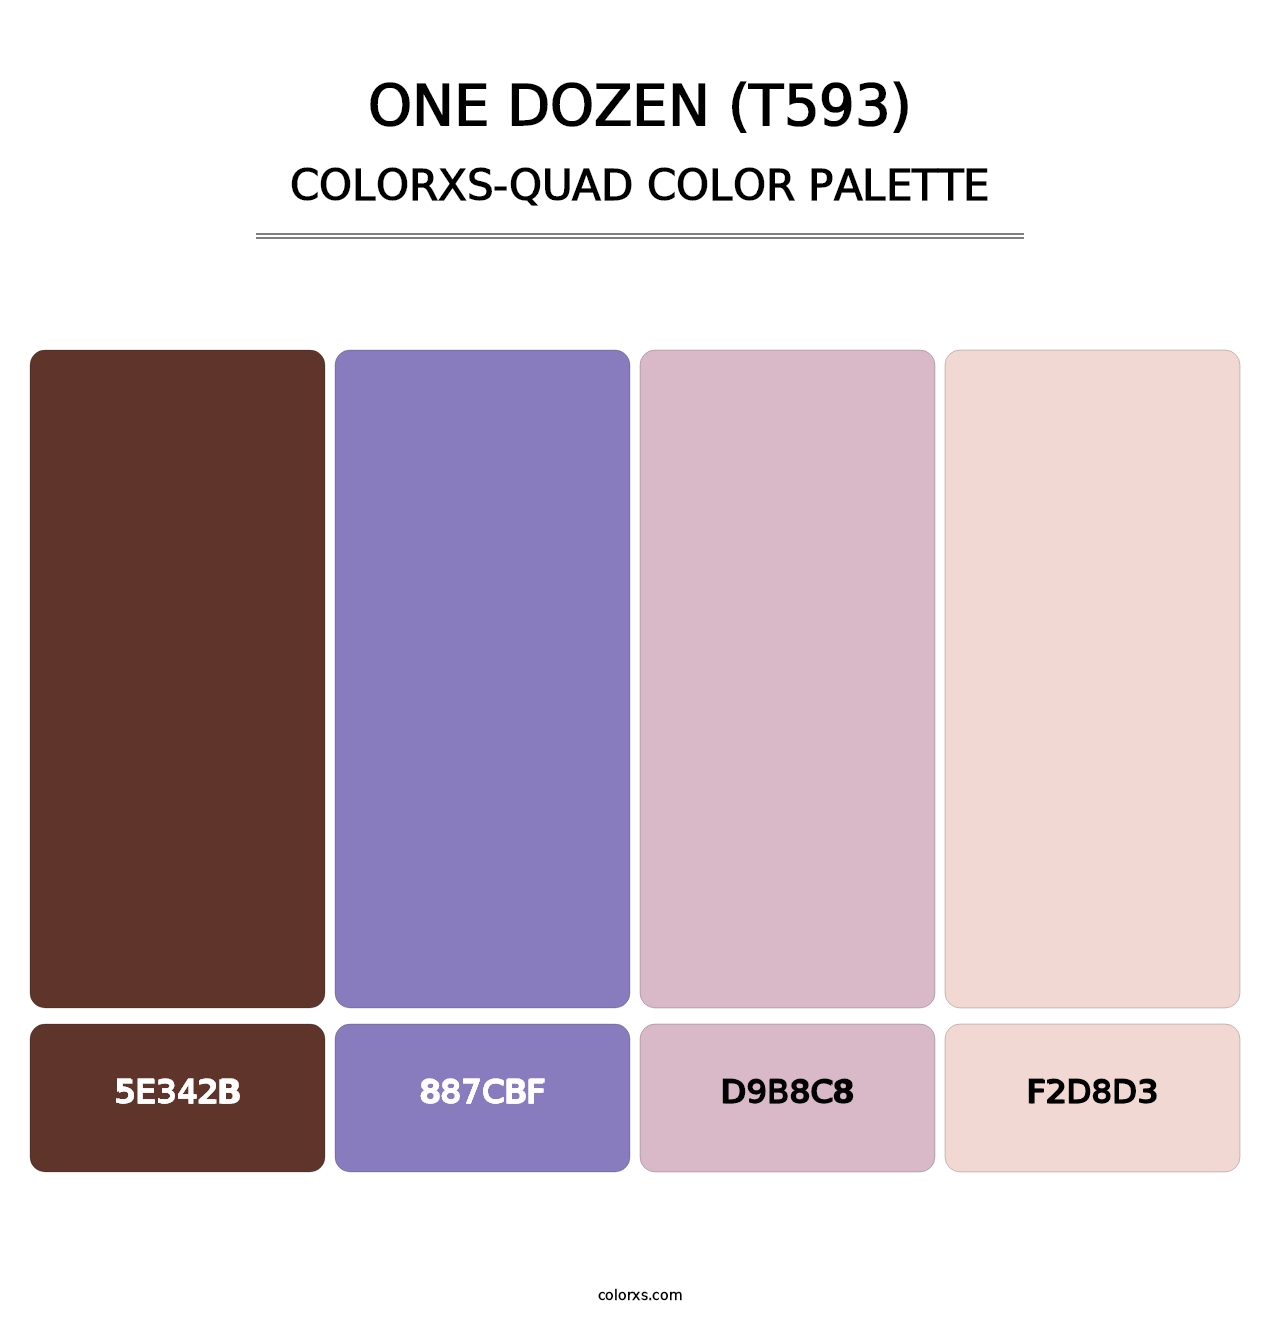 One Dozen (T593) - Colorxs Quad Palette